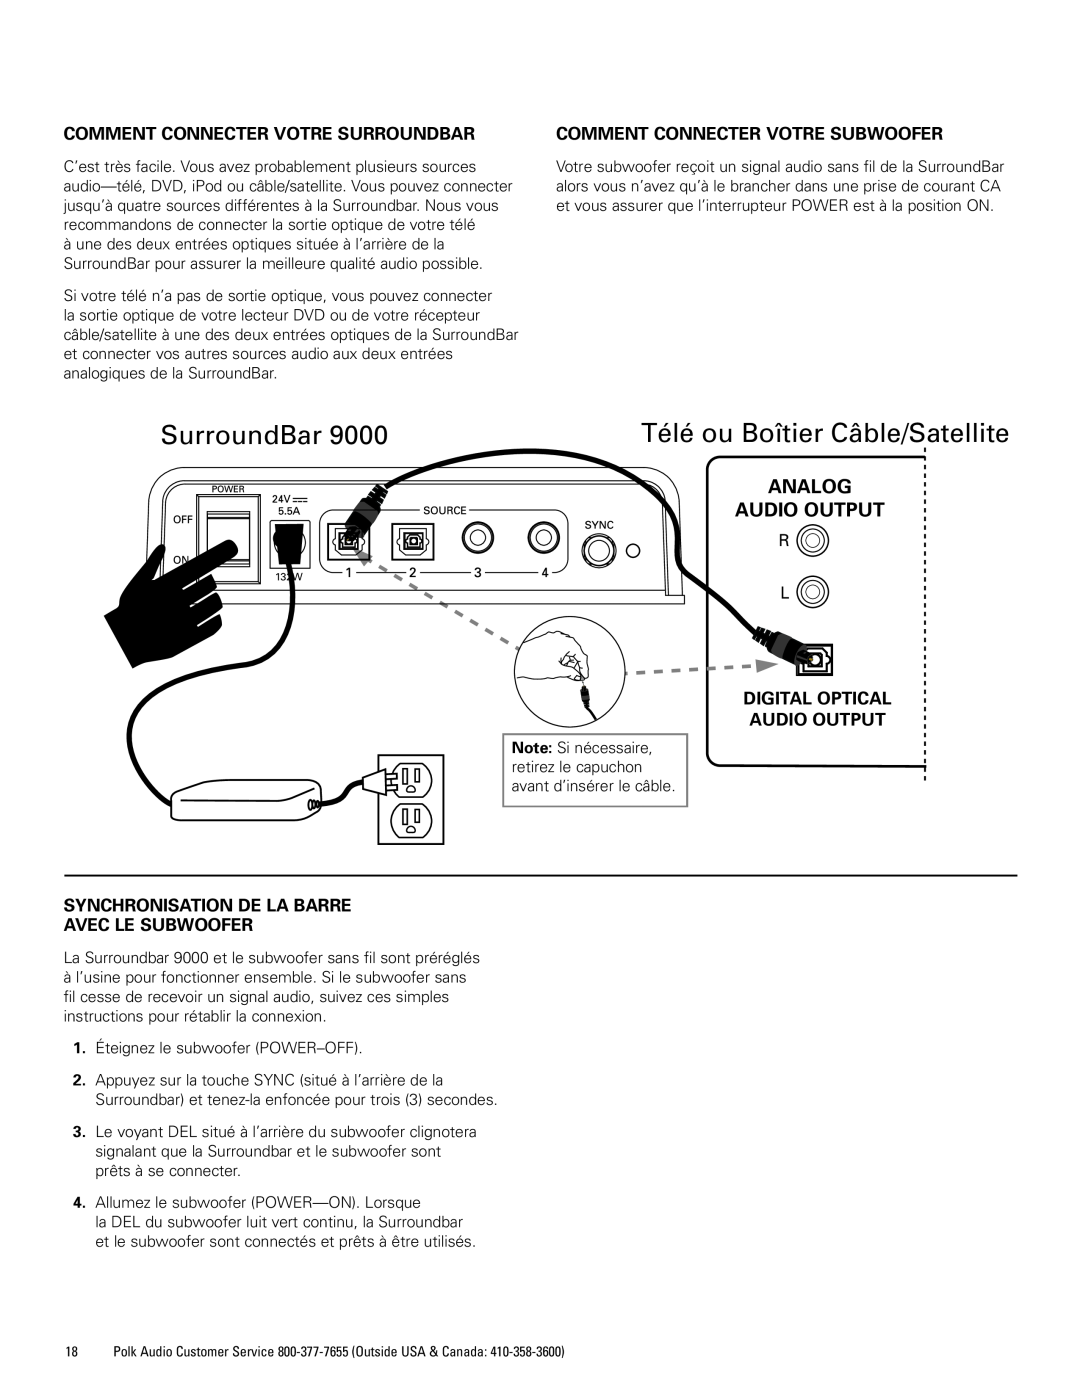 Polk Audio 9000 Télé ou Boîtier Câble/Satellite, Comment Connecter Votre Surroundbar, Comment Connecter Votre Subwoofer 